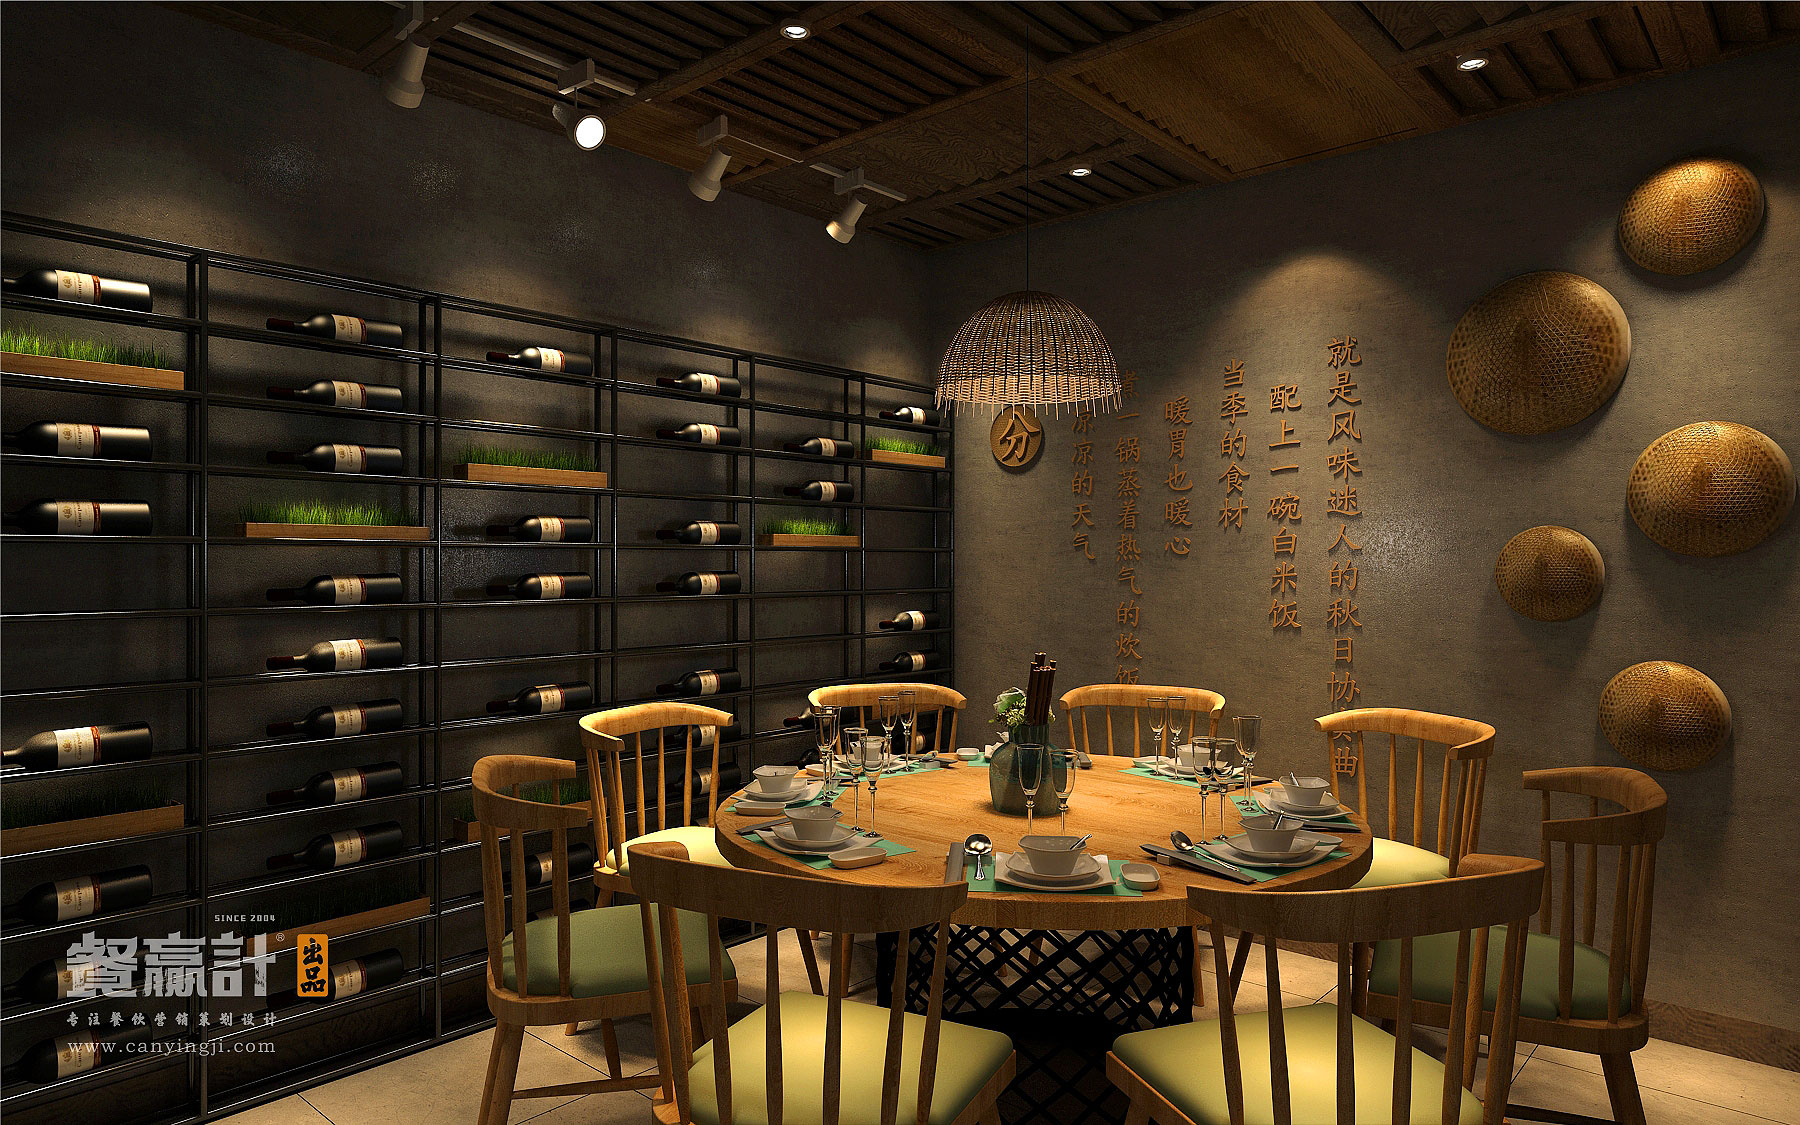 深圳生态主题餐厅空间升级改造设计——禾π创意包房设计